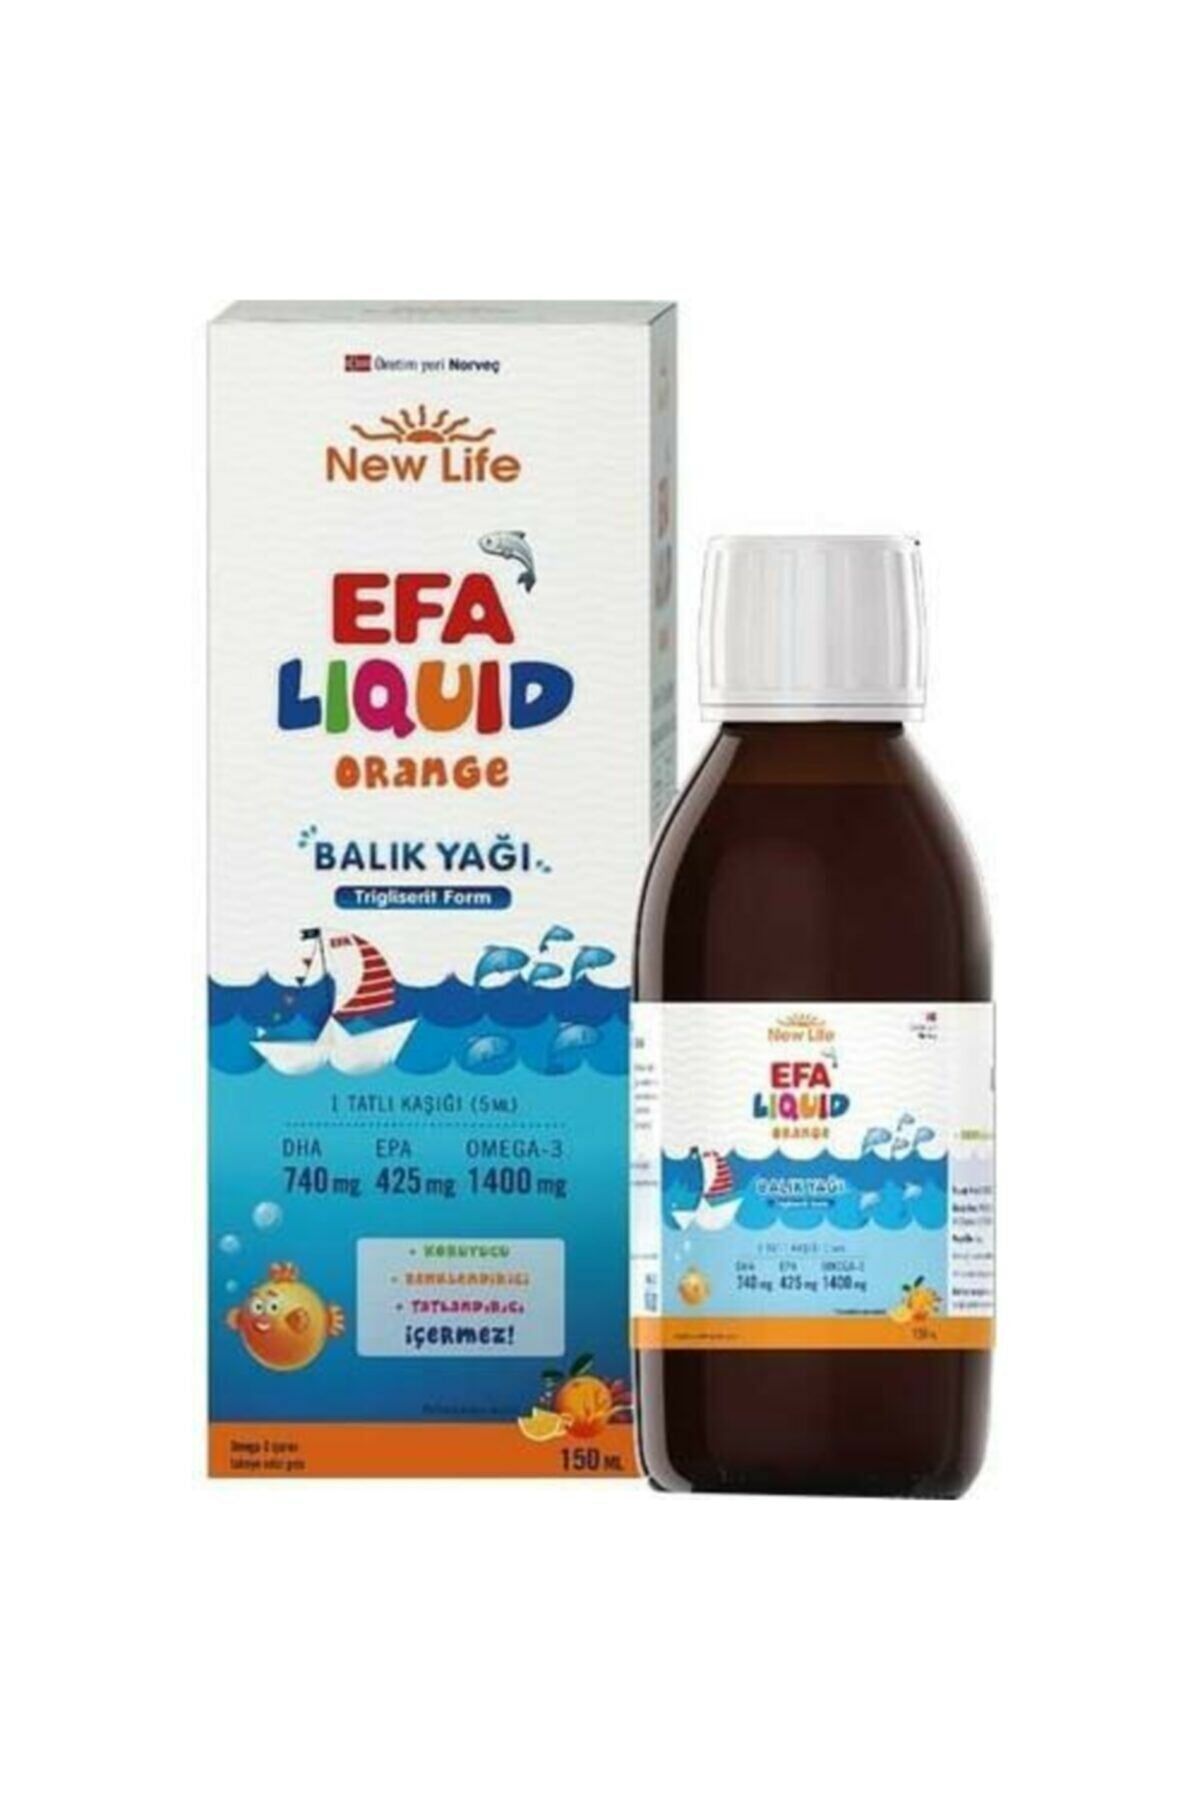 New Life EFA Liquid Portakal 150 ml Balık Yağı Şurubu